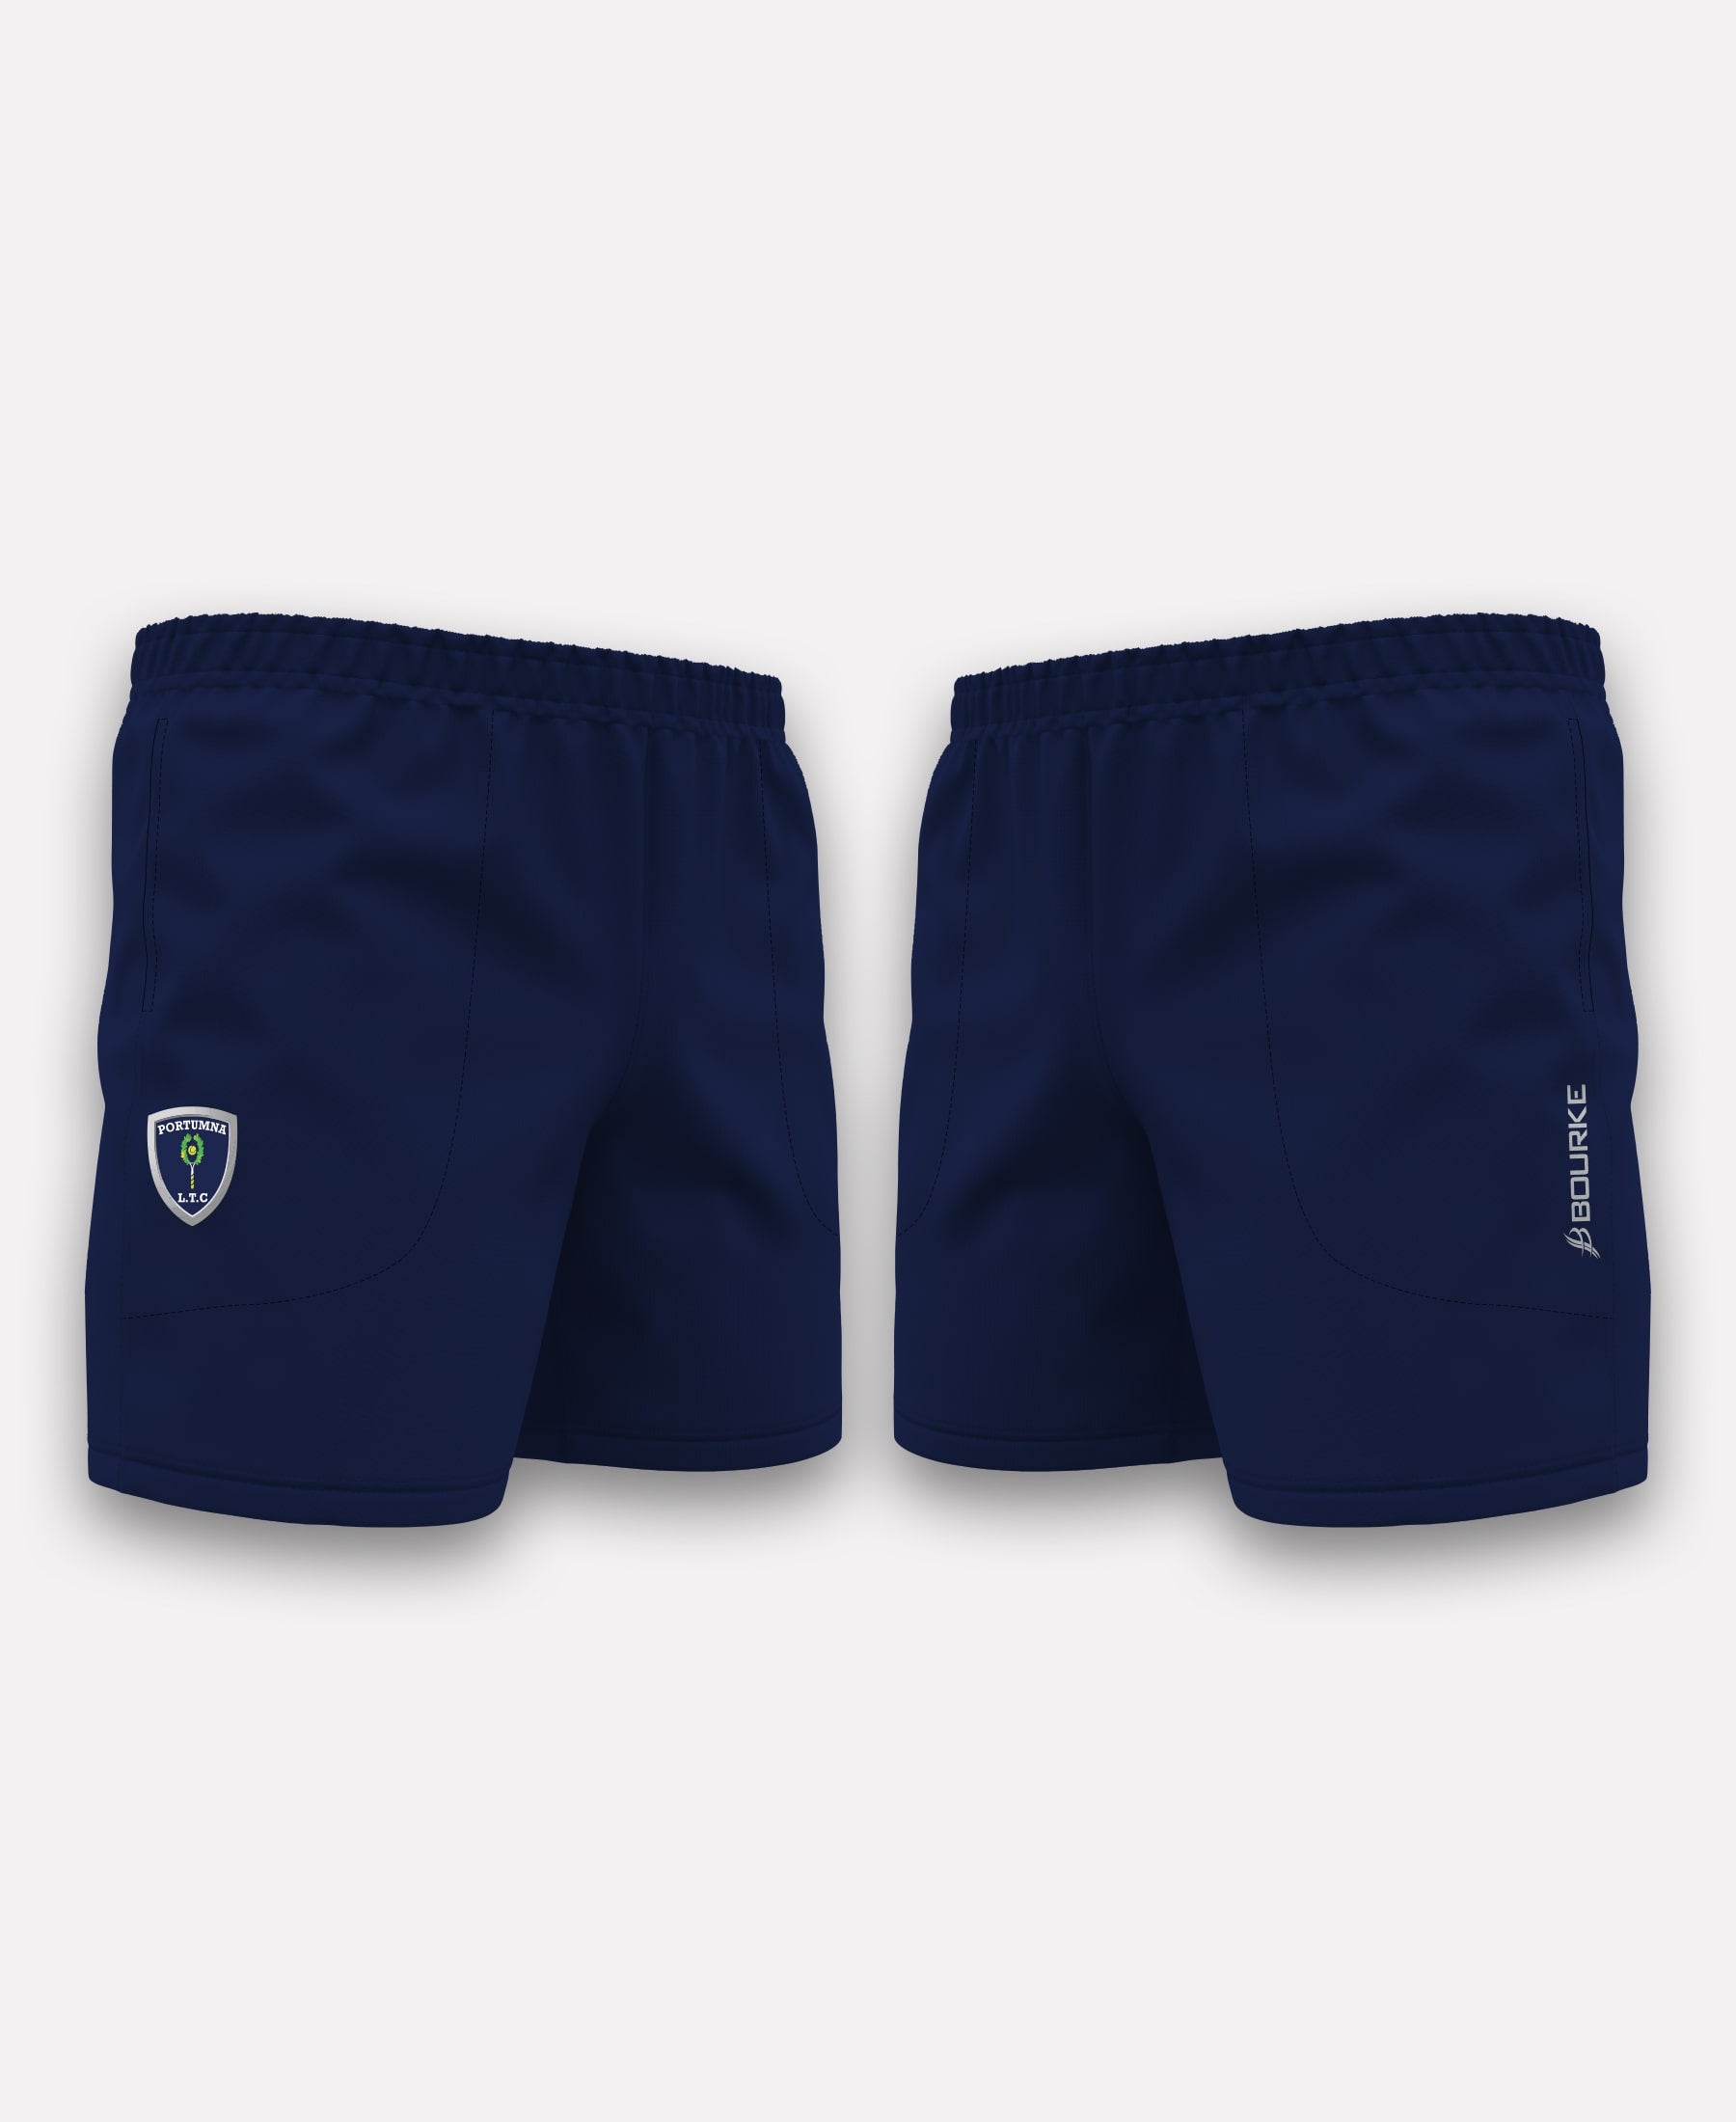 Portumna Lawn Tennis Club TACA Gym Shorts (Navy)